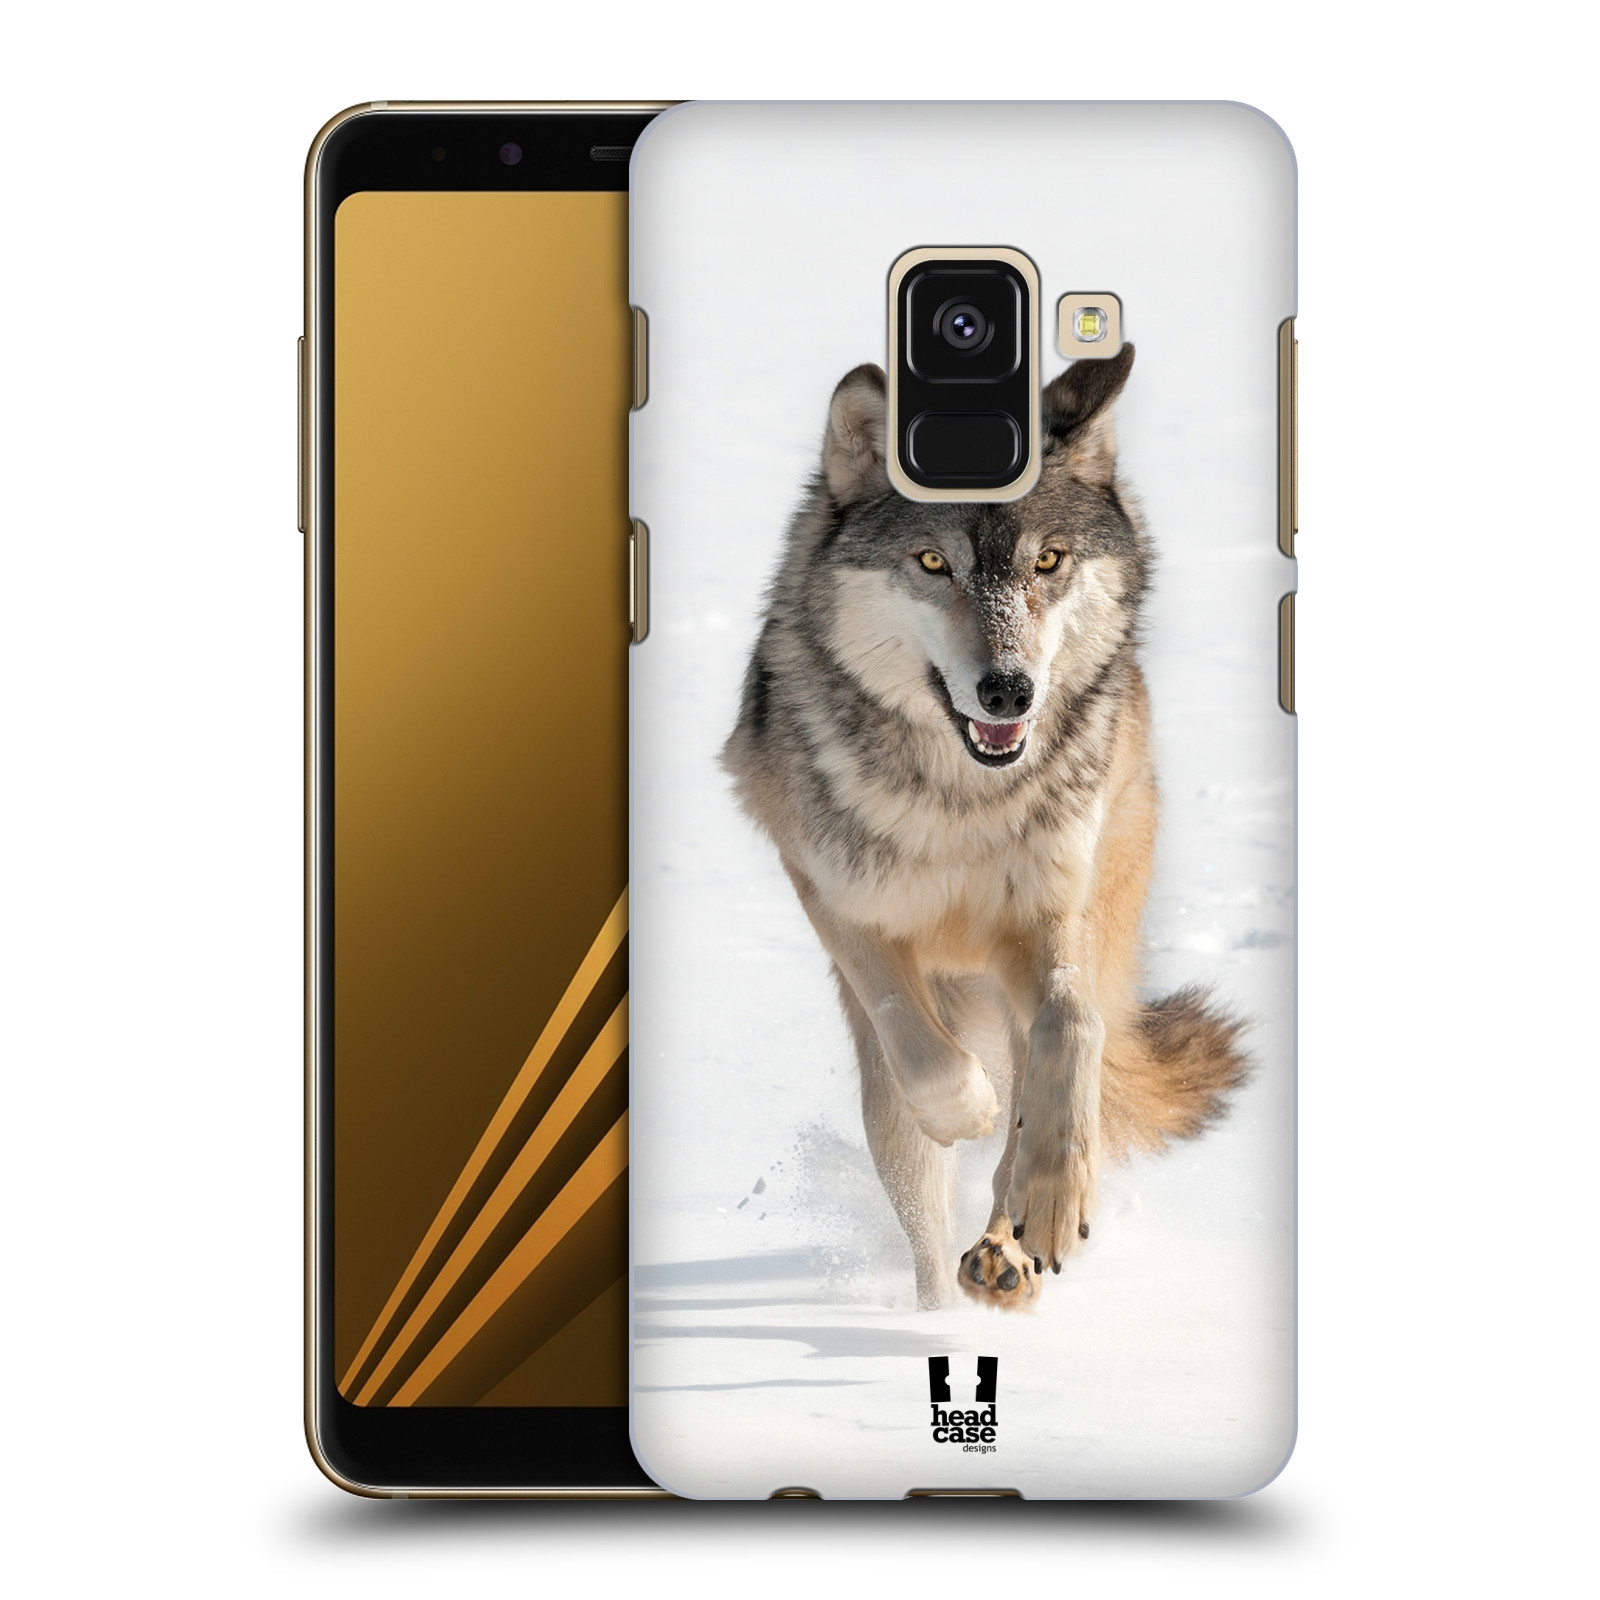 Zadní obal pro mobil Samsung Galaxy A8+ - HEAD CASE - Svět zvířat divoký vlk